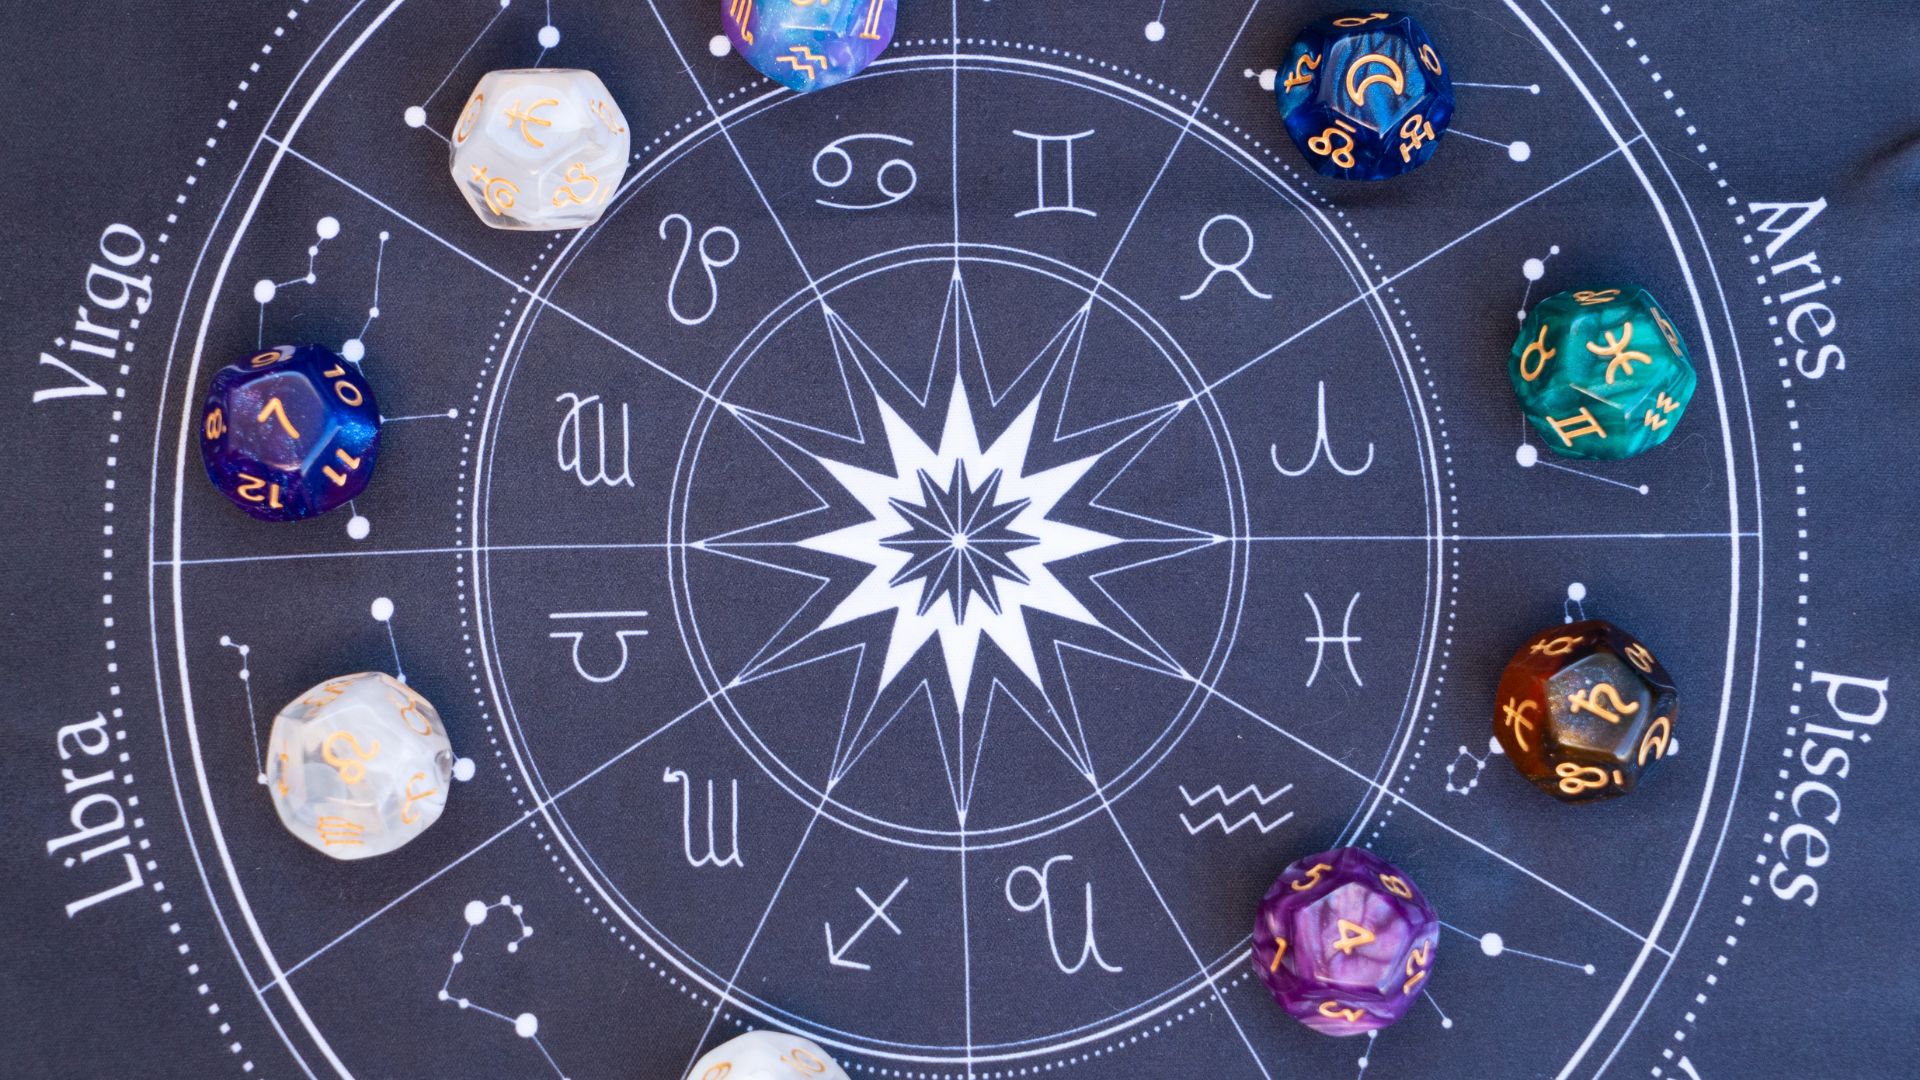 A astrologia é uma área do conhecimento que estuda os efeitos dos astros sobre a vida humana. Segundo a astrologia, cada signo do zodíaco possui características e qualidades únicas.